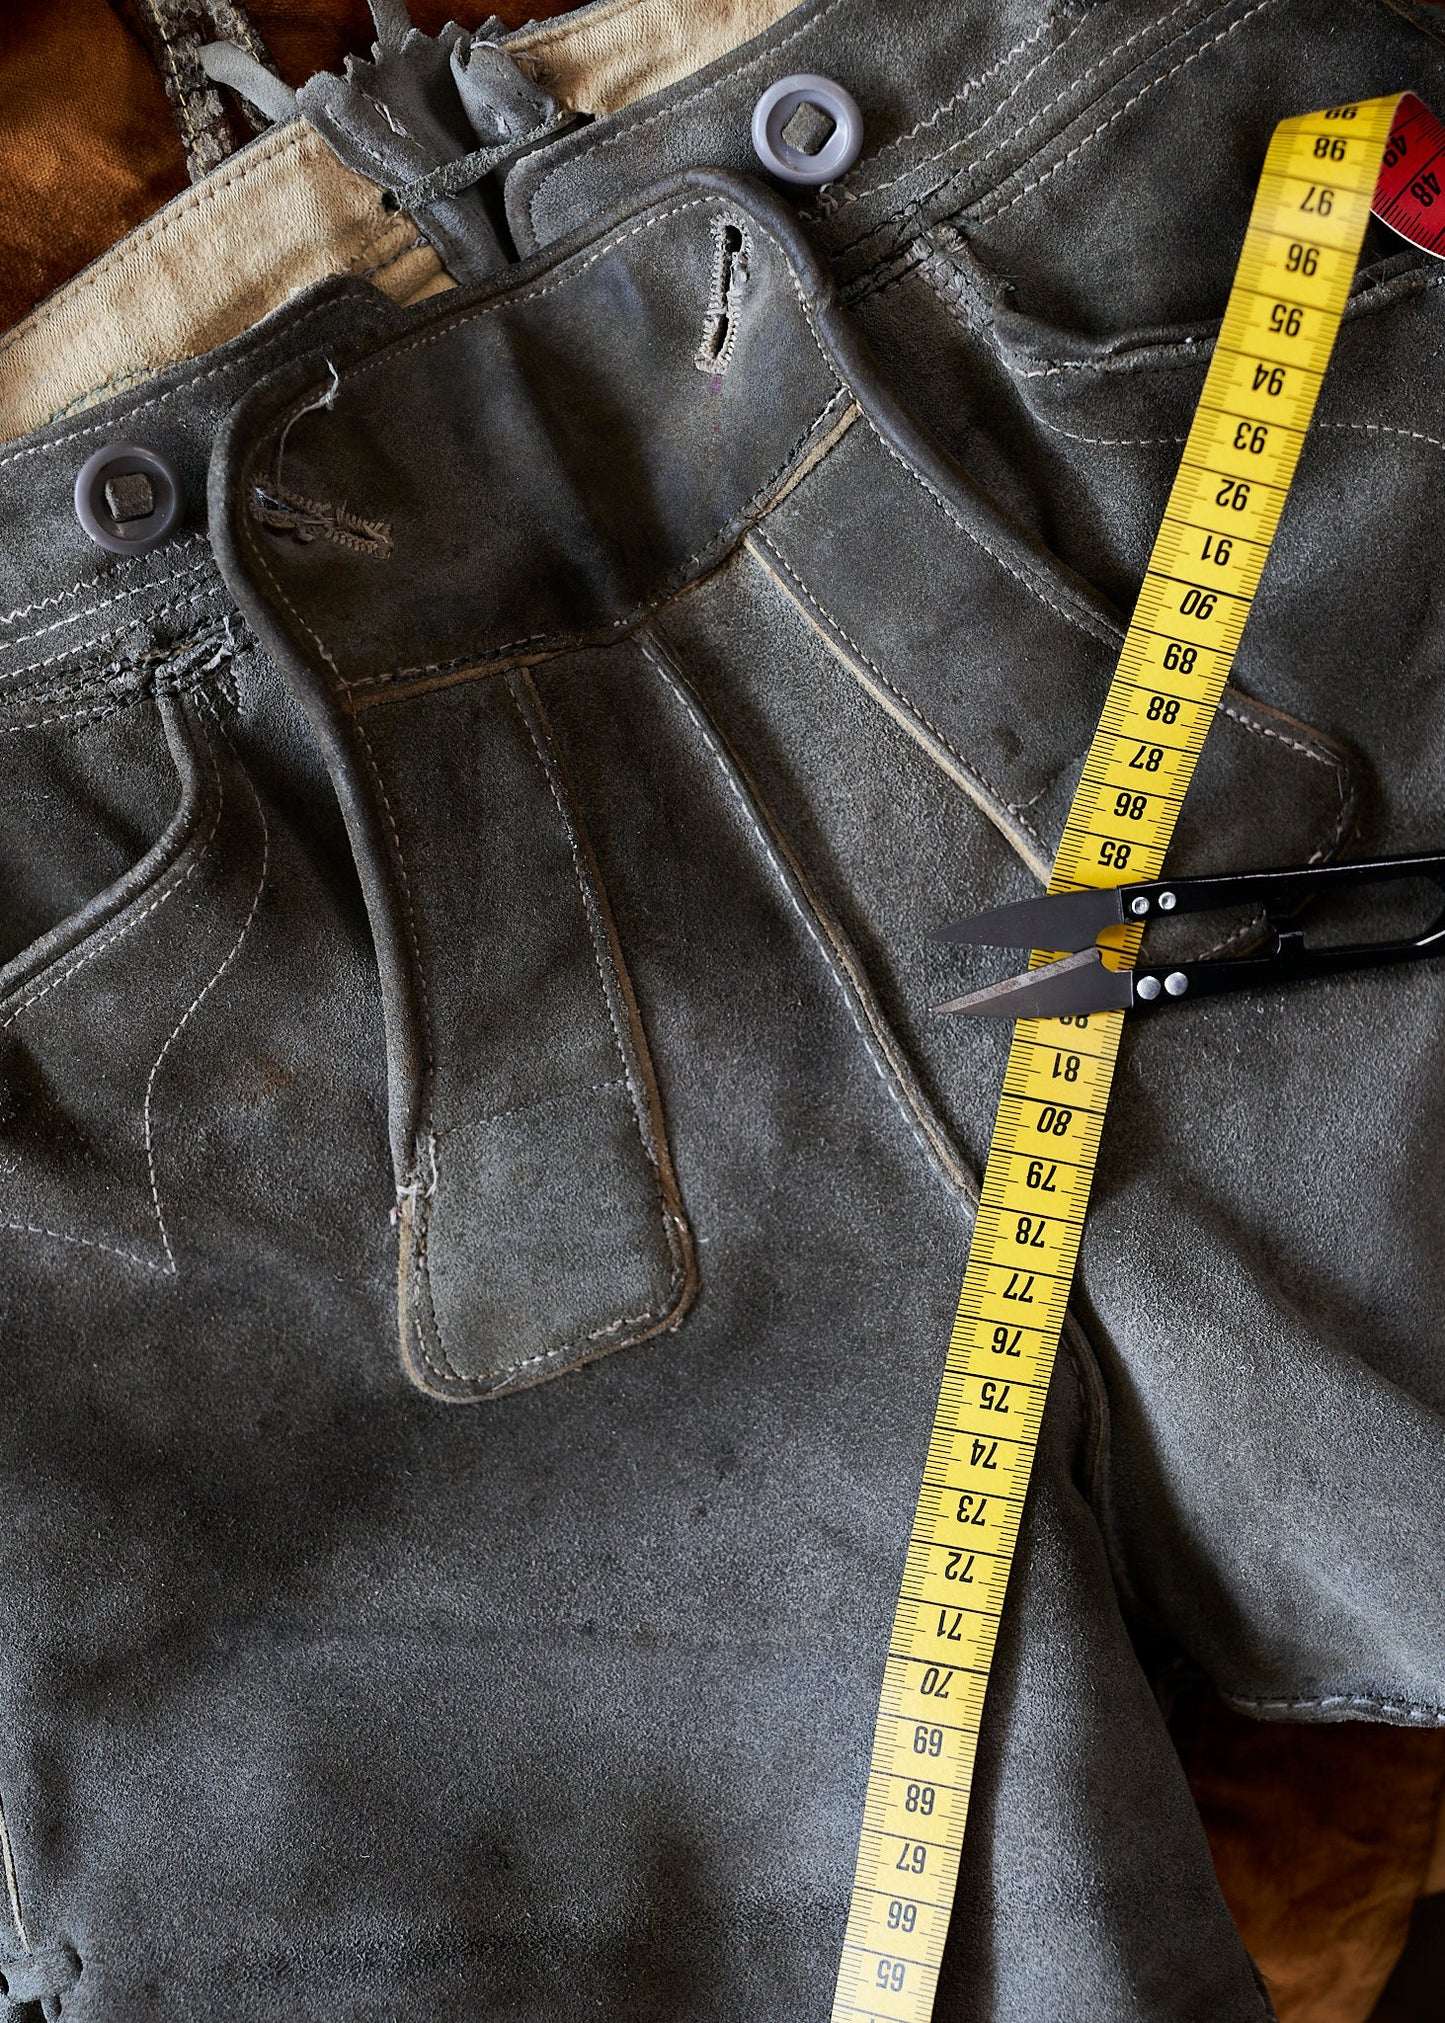 Lederhosen Reparatur- Lederhosen Reparatur in der nähe - Hose - Lederhosen - Reparieren - deine Online Schneiderei